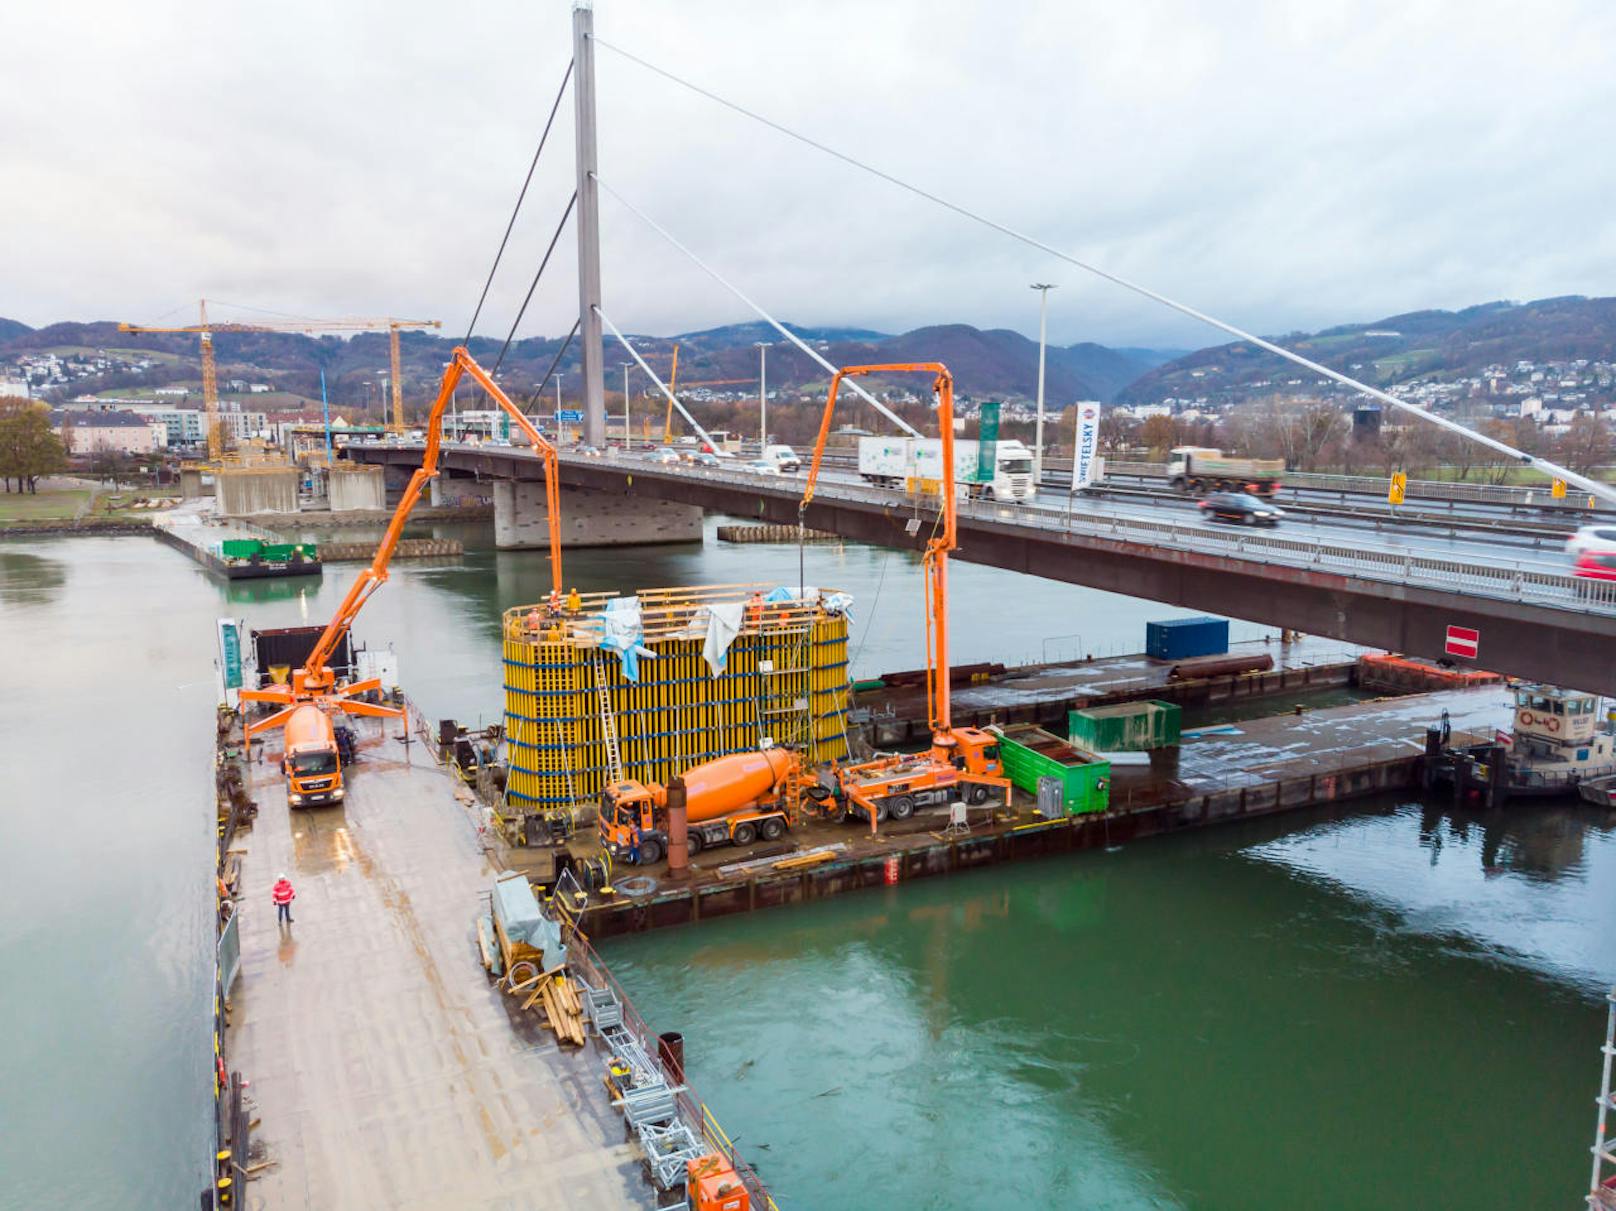 Aufgrund des Hochwassers mussten in der Donau bei Linz drei Arbeitsschiffe evakuiert werden.